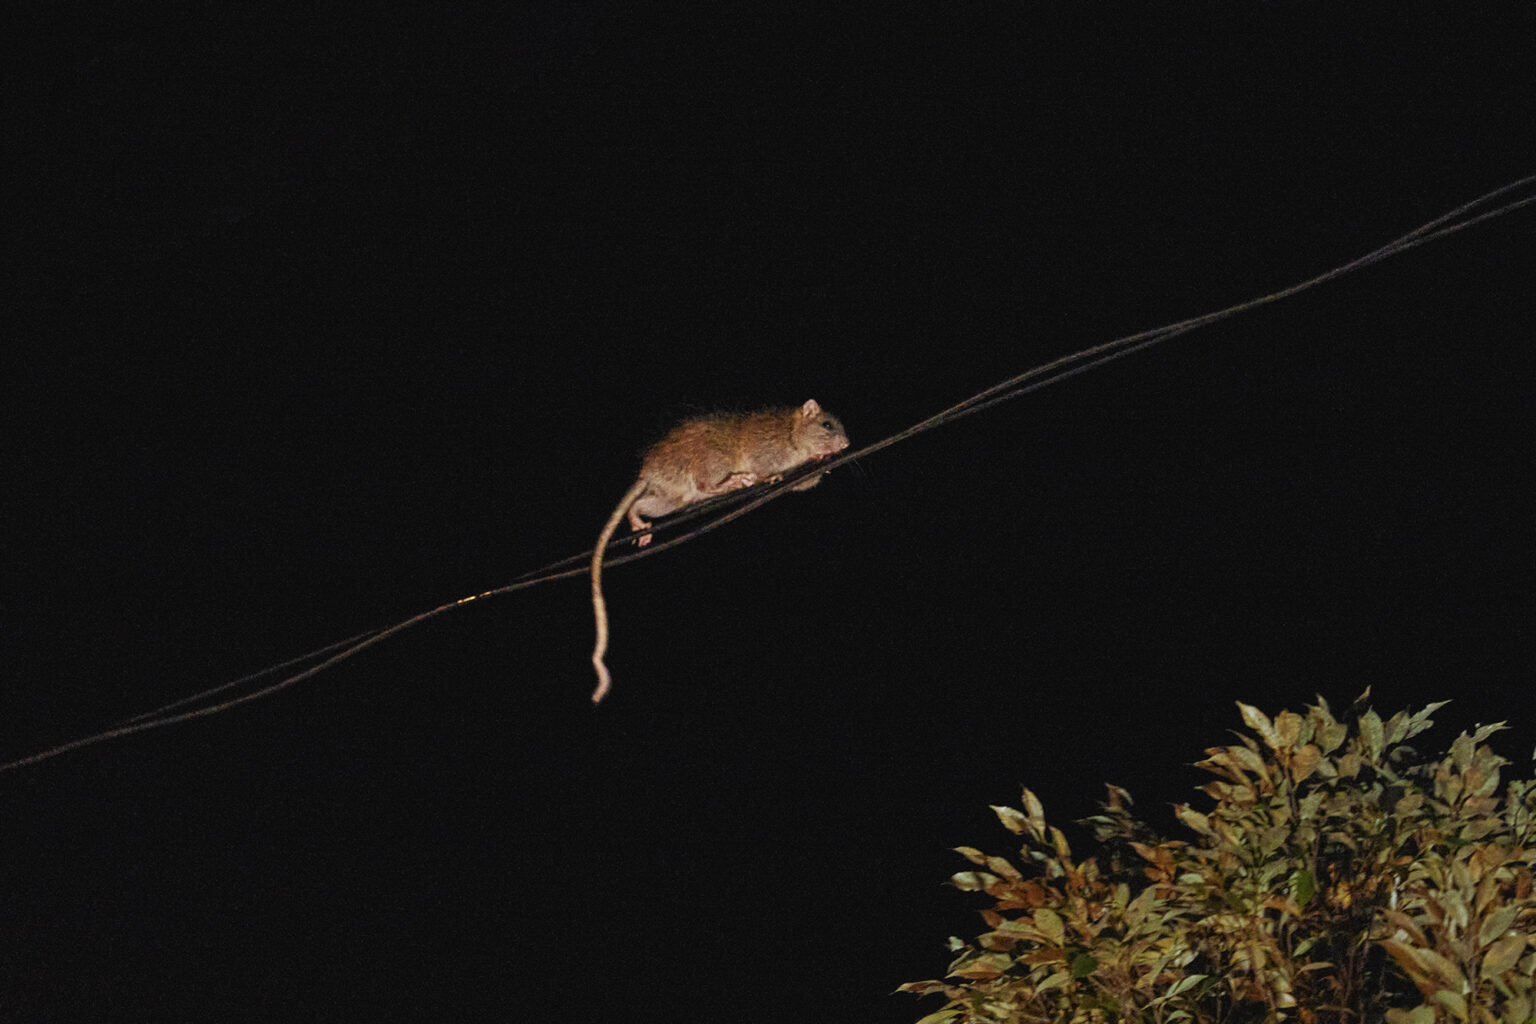 電線を器用に移動するケナガネズミ。背中の長い毛が名前の由来で、胴体より長い尾も特徴。